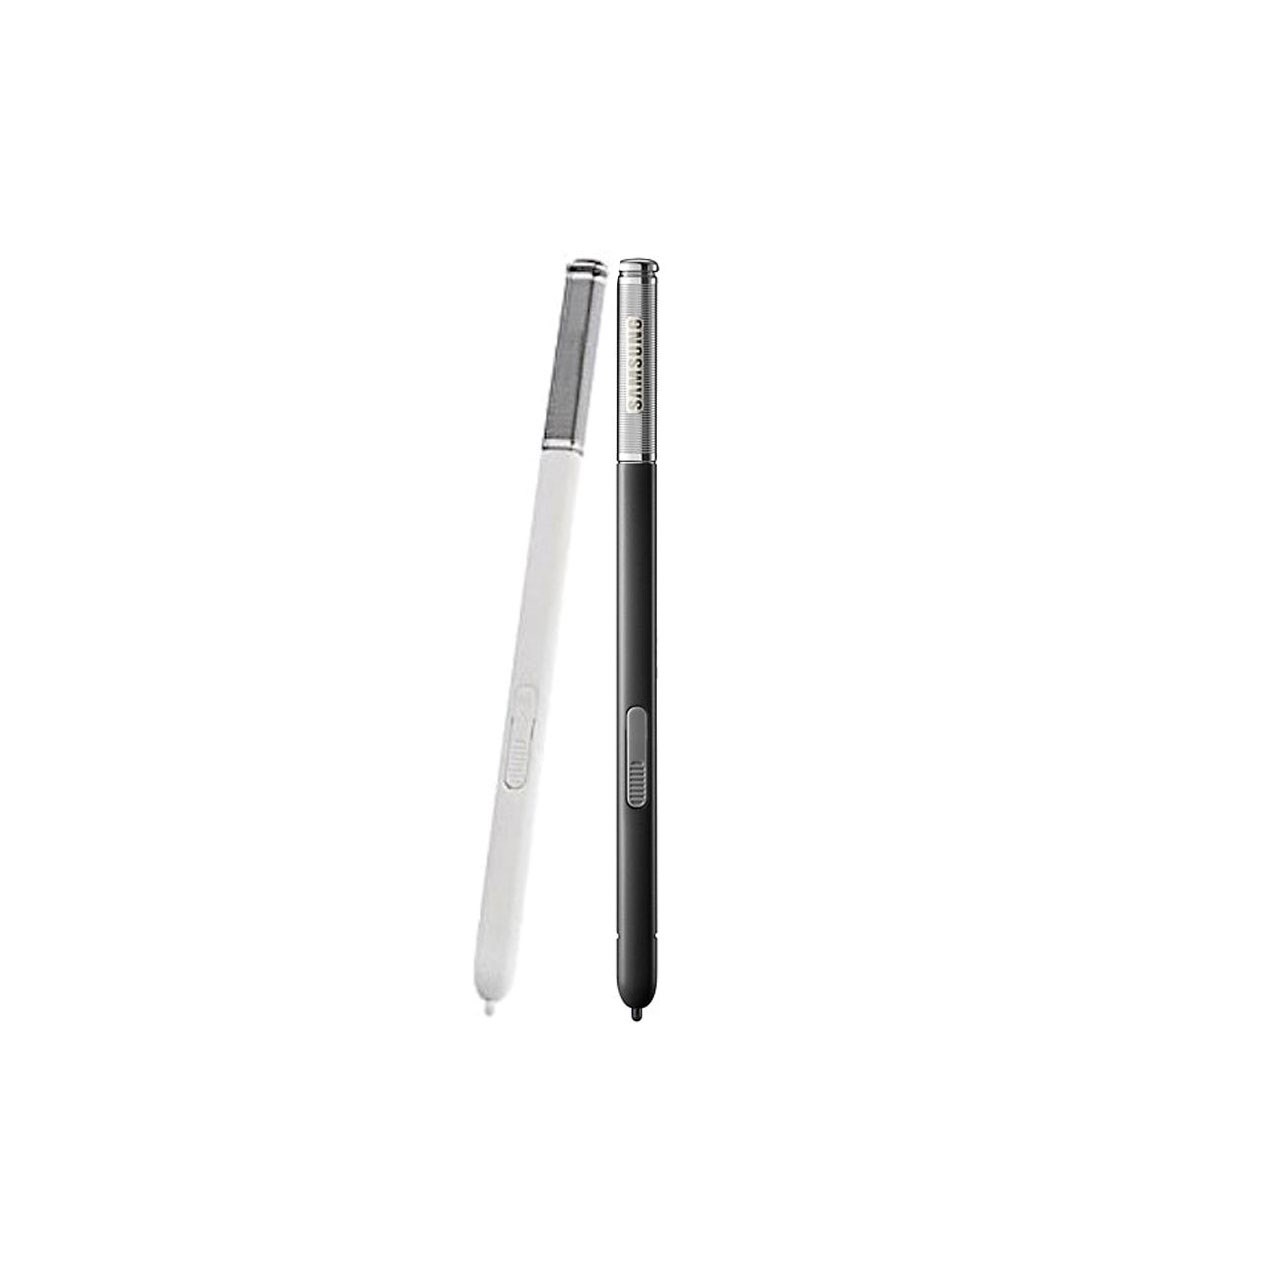 قلم لمسی  مدل S Pen مناسب برای گوشیGalaxy Note 2                     غیر اصل